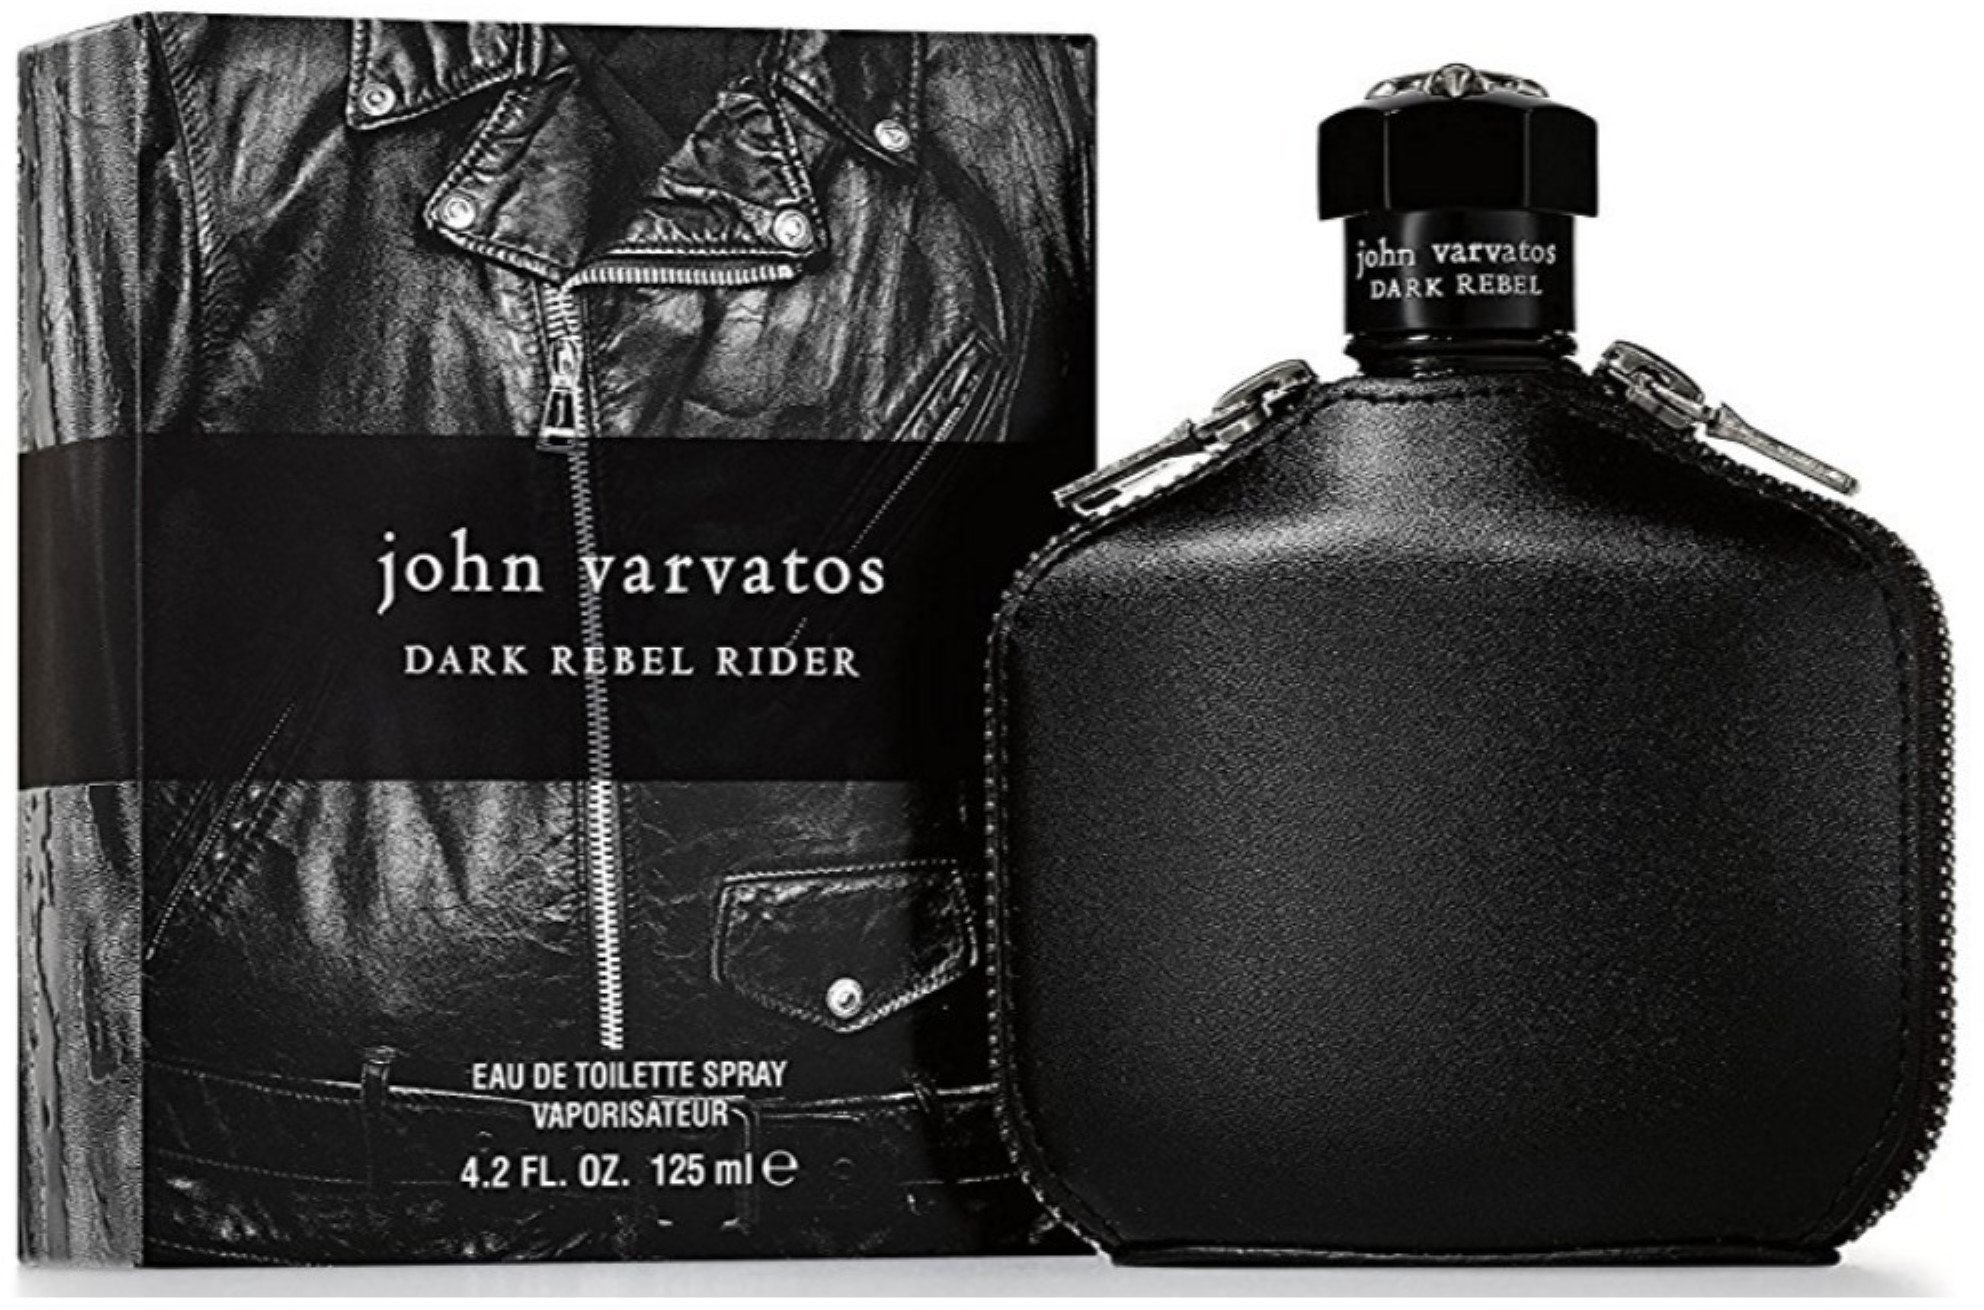 JOHN VARVATOS DARK REBEL RIDER perfume by John Varvatos – Wikiparfum